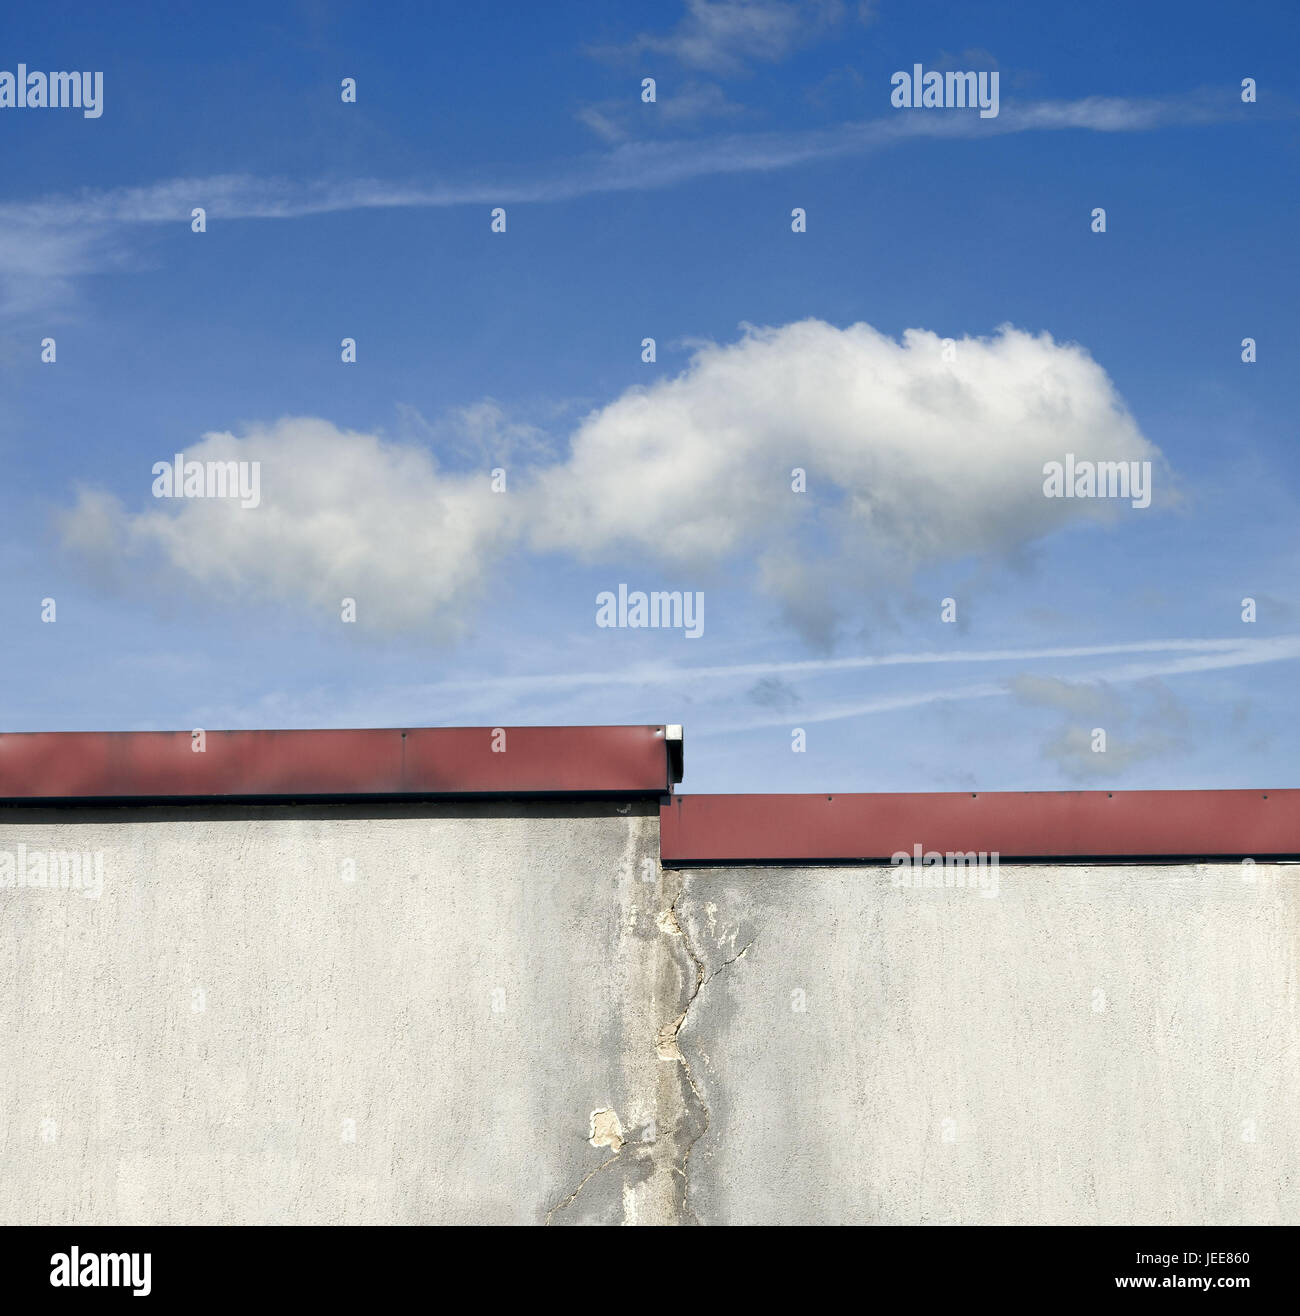 Mur d'une maison, Ciel, nuages, fissures, gris, conception, mur, dirtily, bâtiment, maison, bleu, fissuré, l'architecture, l'ensoleillement, Banque D'Images